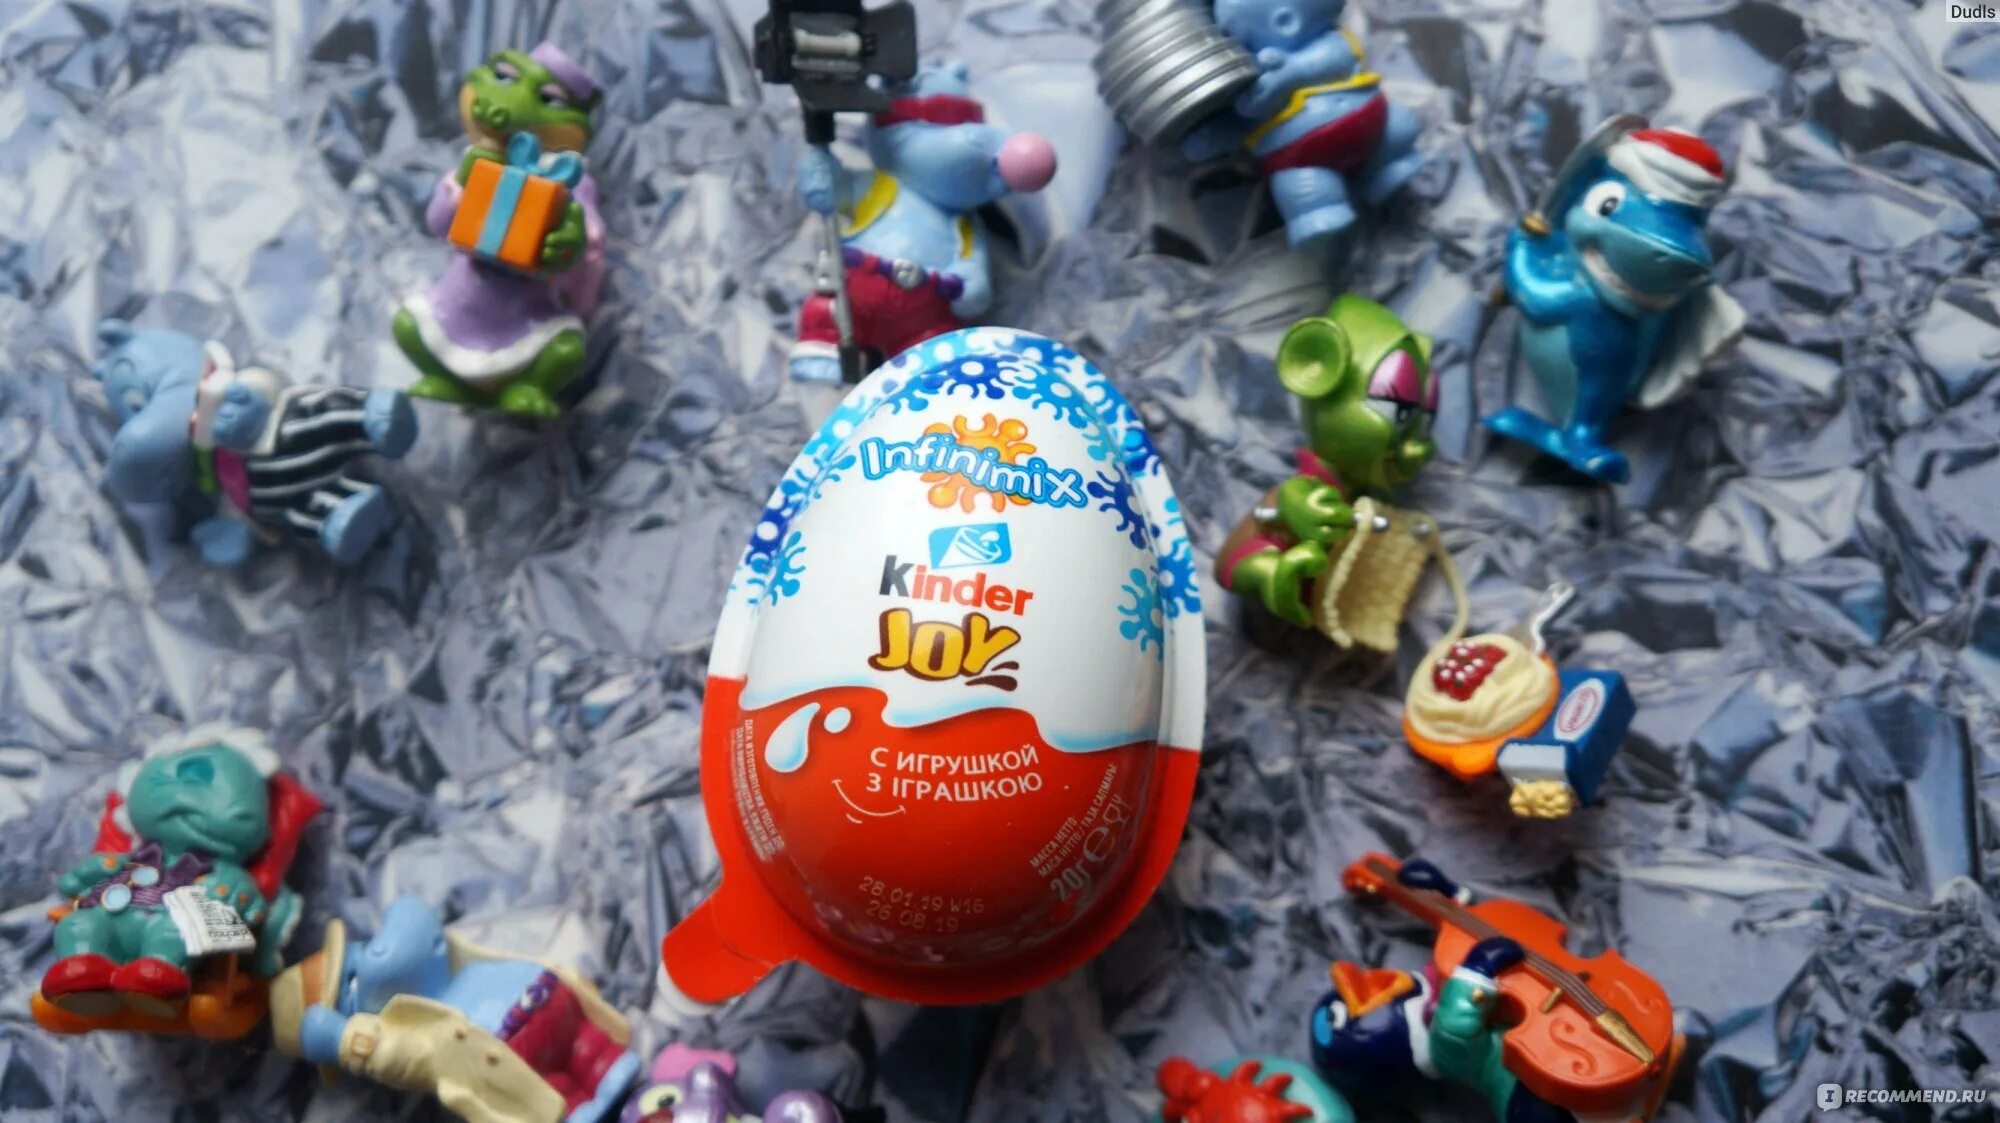 Включи киндер открывать. Киндер человечек. Игрушки открытые из киндера. Новогоднее шоколадное яйцо с игрушкой. Киндеры шоколадные яйца с сюрпризом.